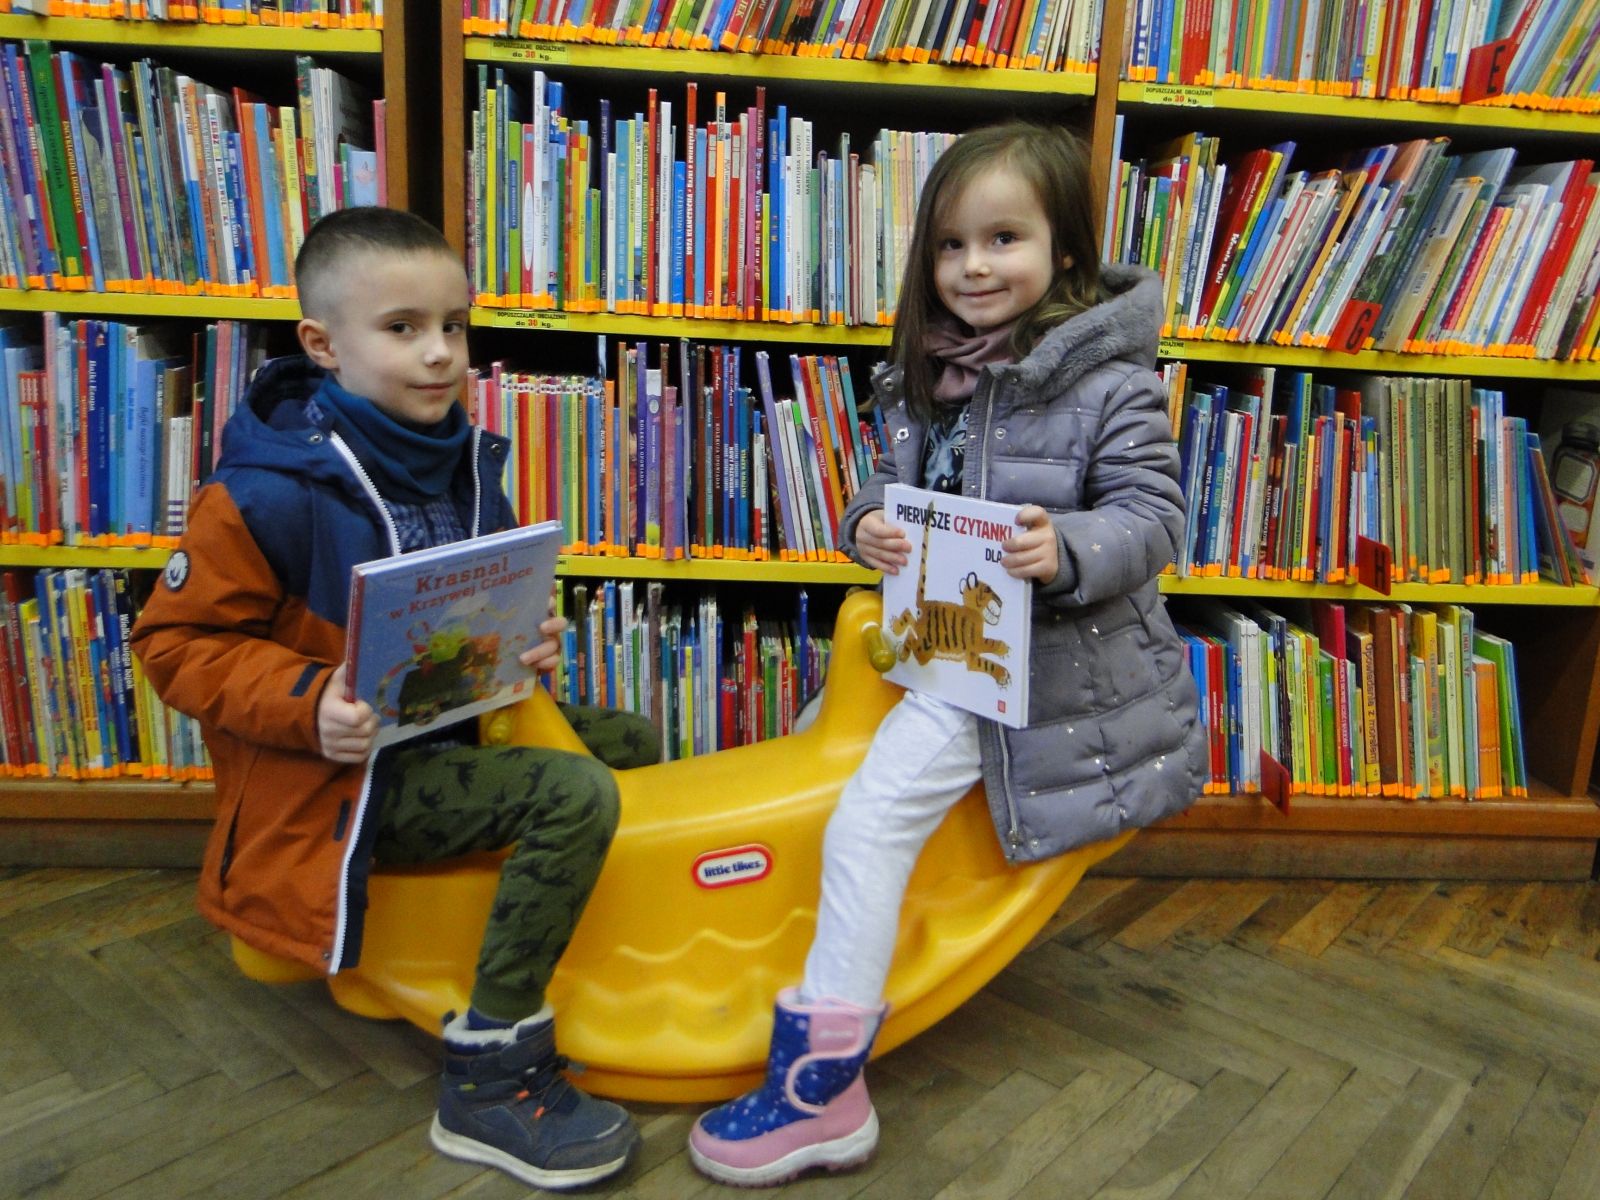 Na żółtej huśtawce siedzi dwoje dzieci, od lewej chłopiec, z prawej dziewczynka. Dzieci trzymają w rękach książki. W tle regały z książkami.